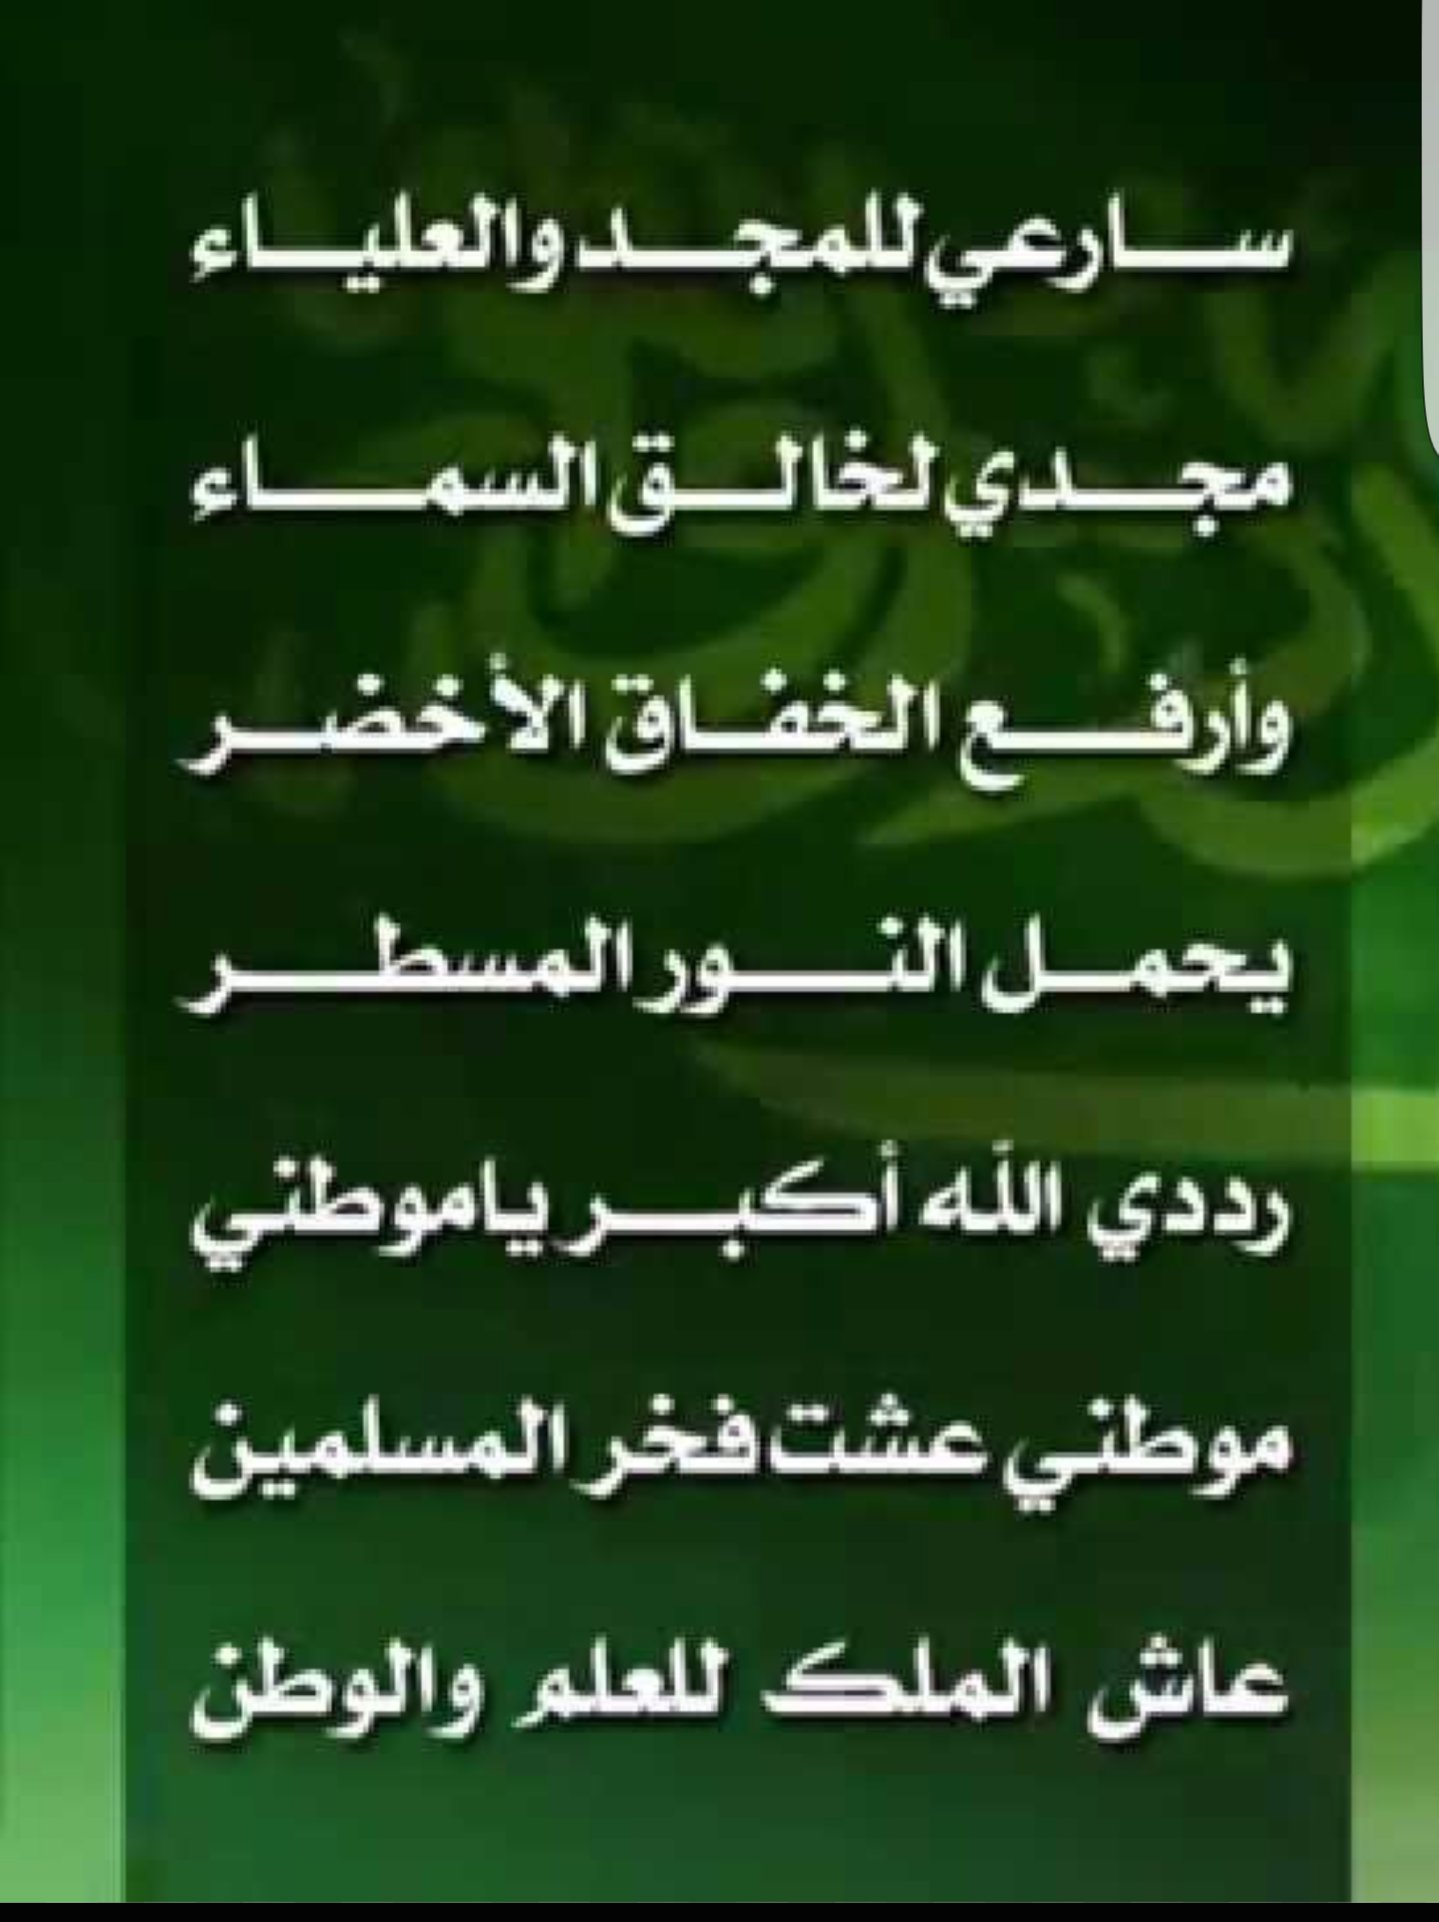 السعودي القديم كلمات النشيد الوطني اول نشيد